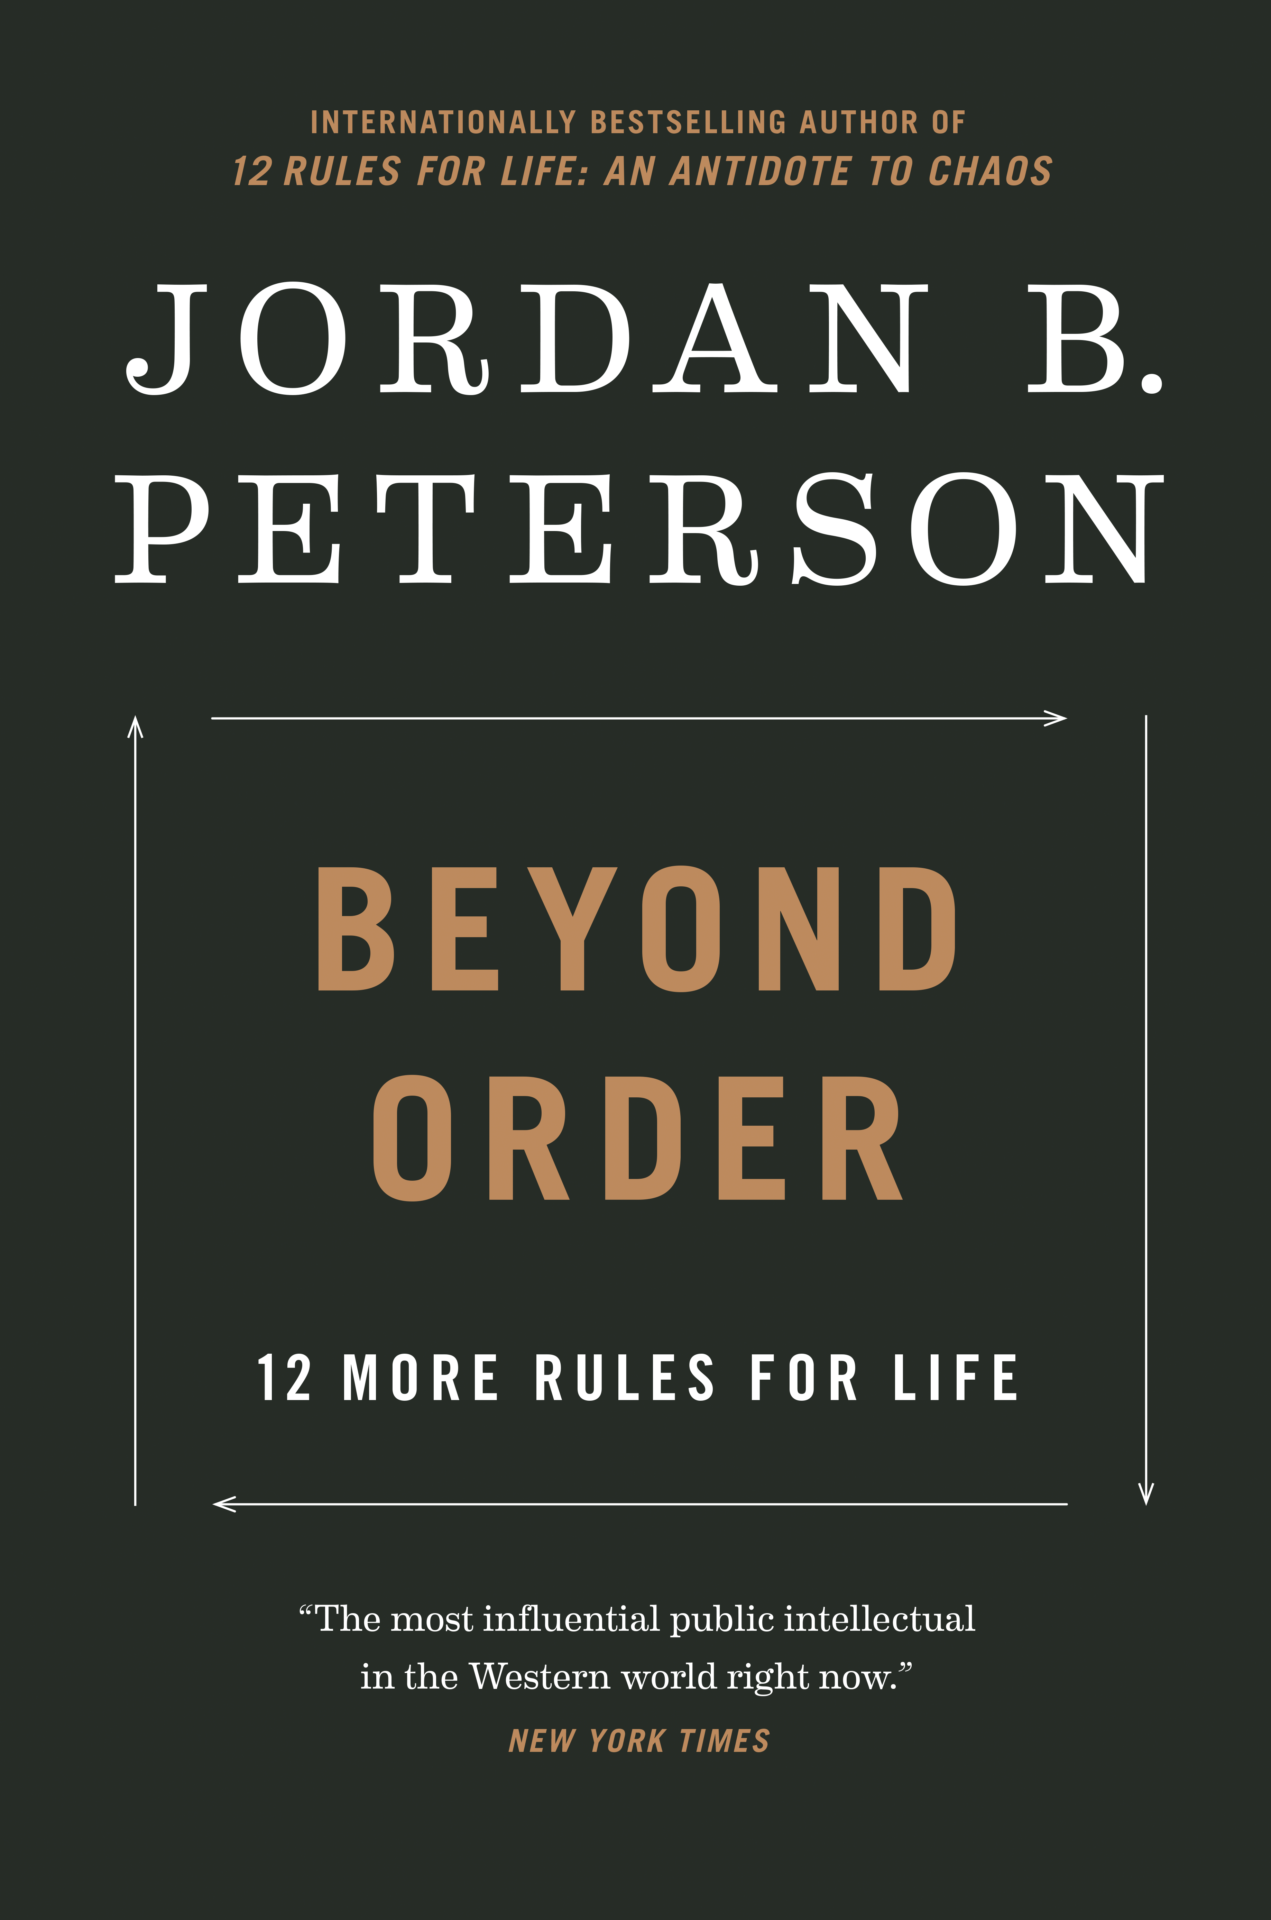 jordan peterson beyond order rules list